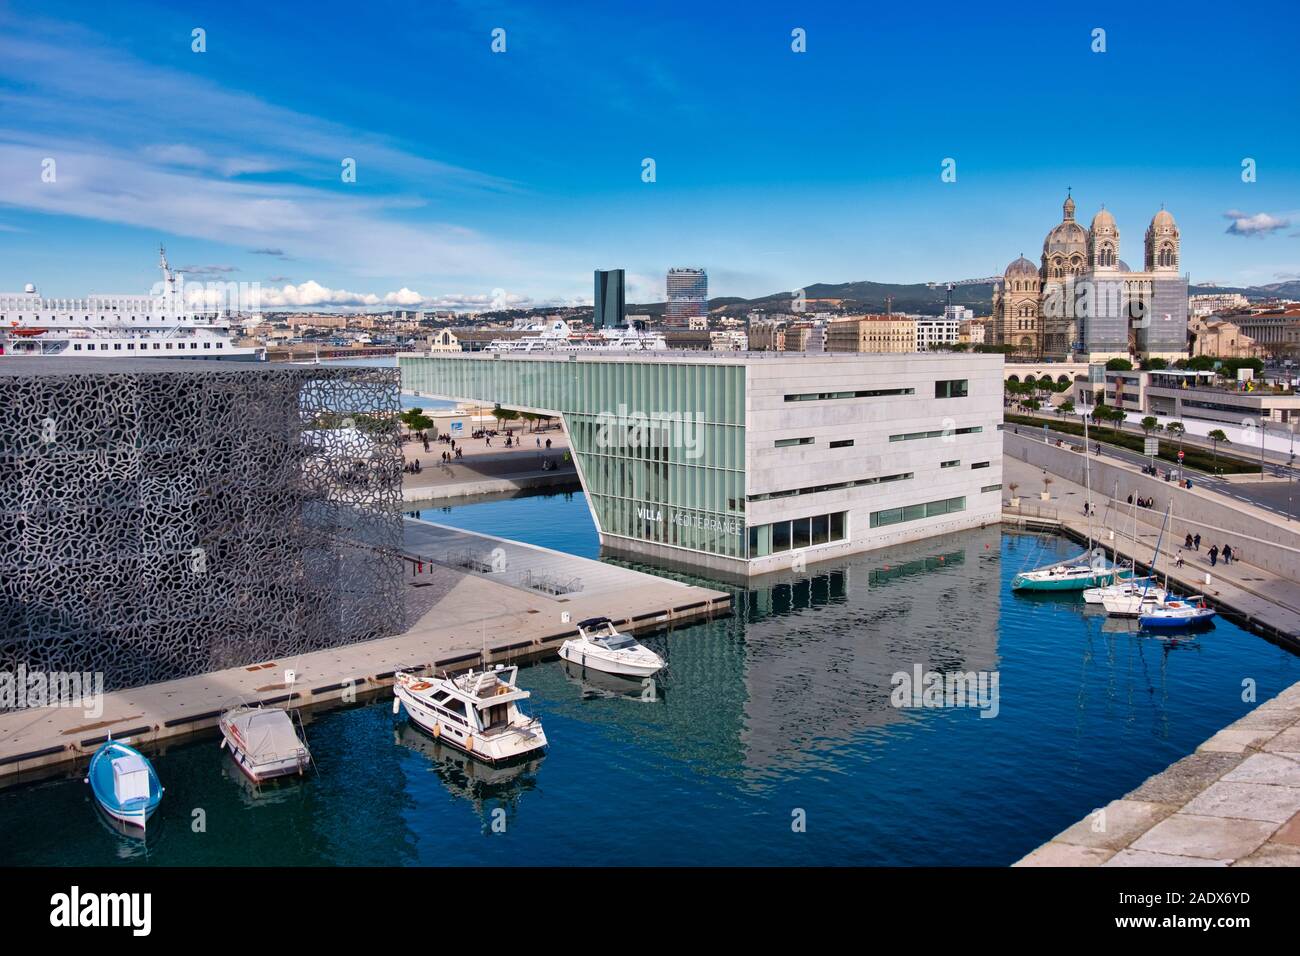 Luftbild des Museums MUCEM, des Kulturzentrums Villa Méditerranée und der Kathedrale Saint Mary Major in Marseille, Frankreich, Europa Stockfoto